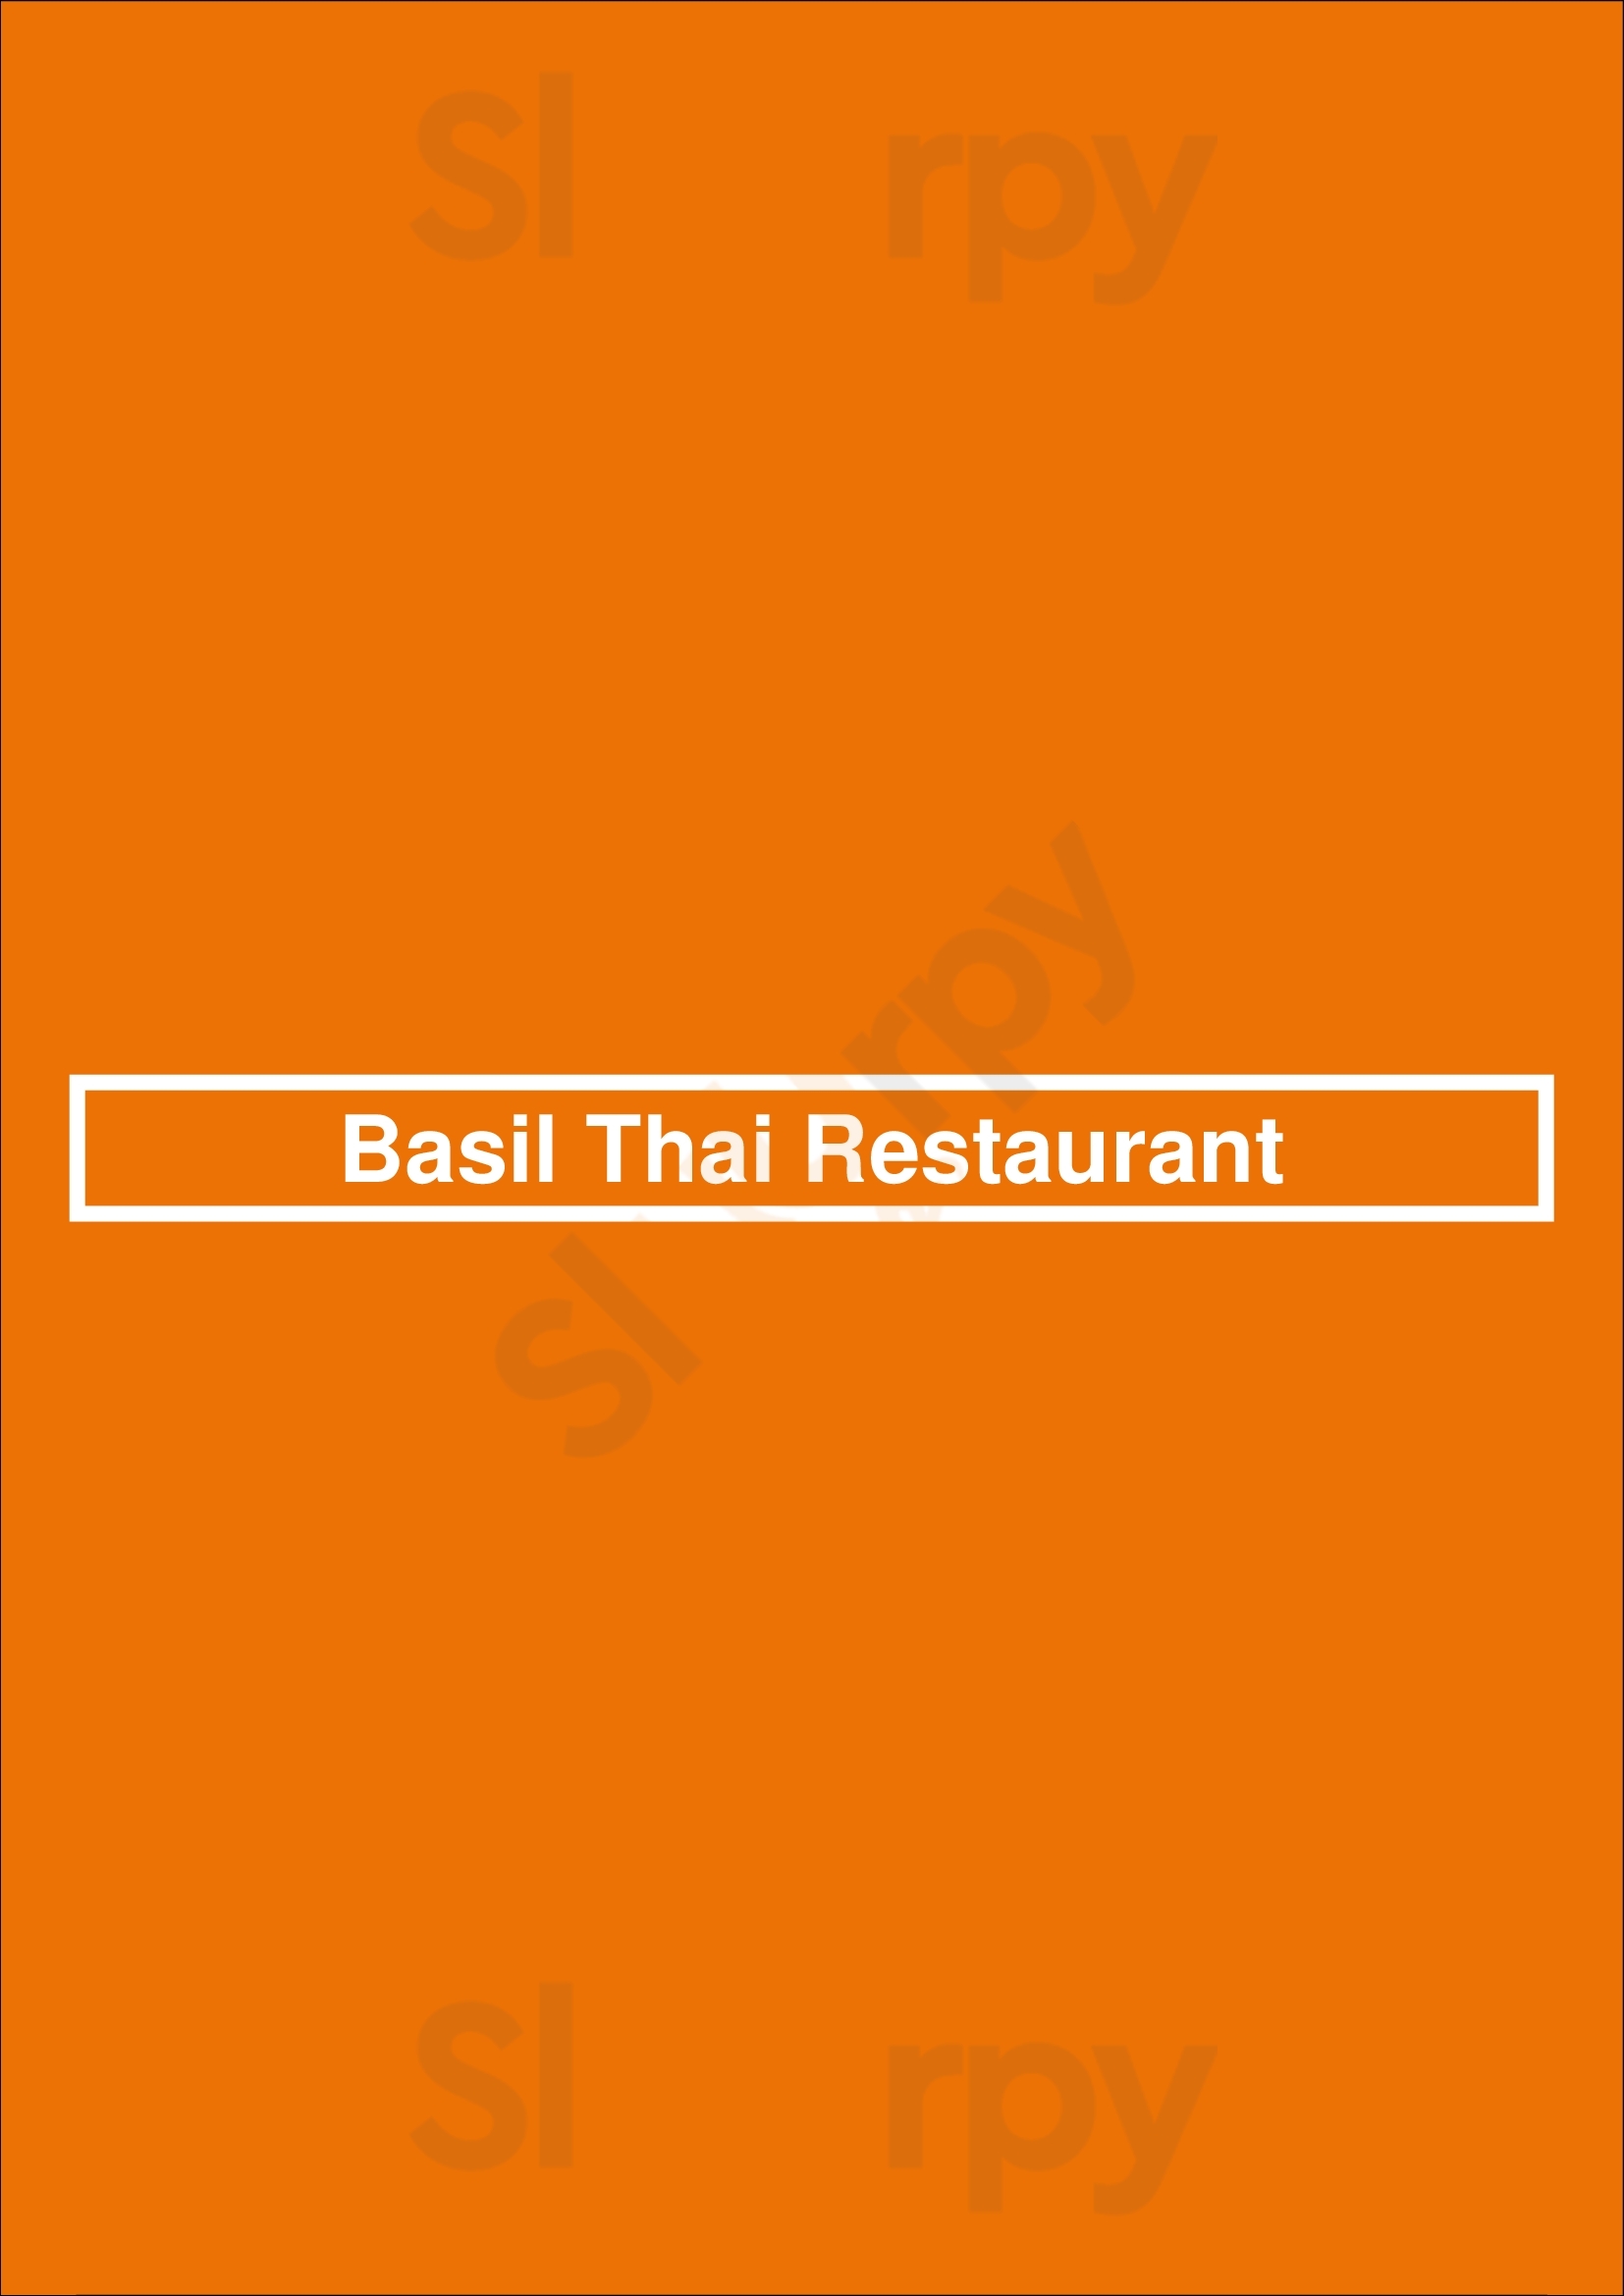 Basil Thai Restaurant Charlotte Menu - 1